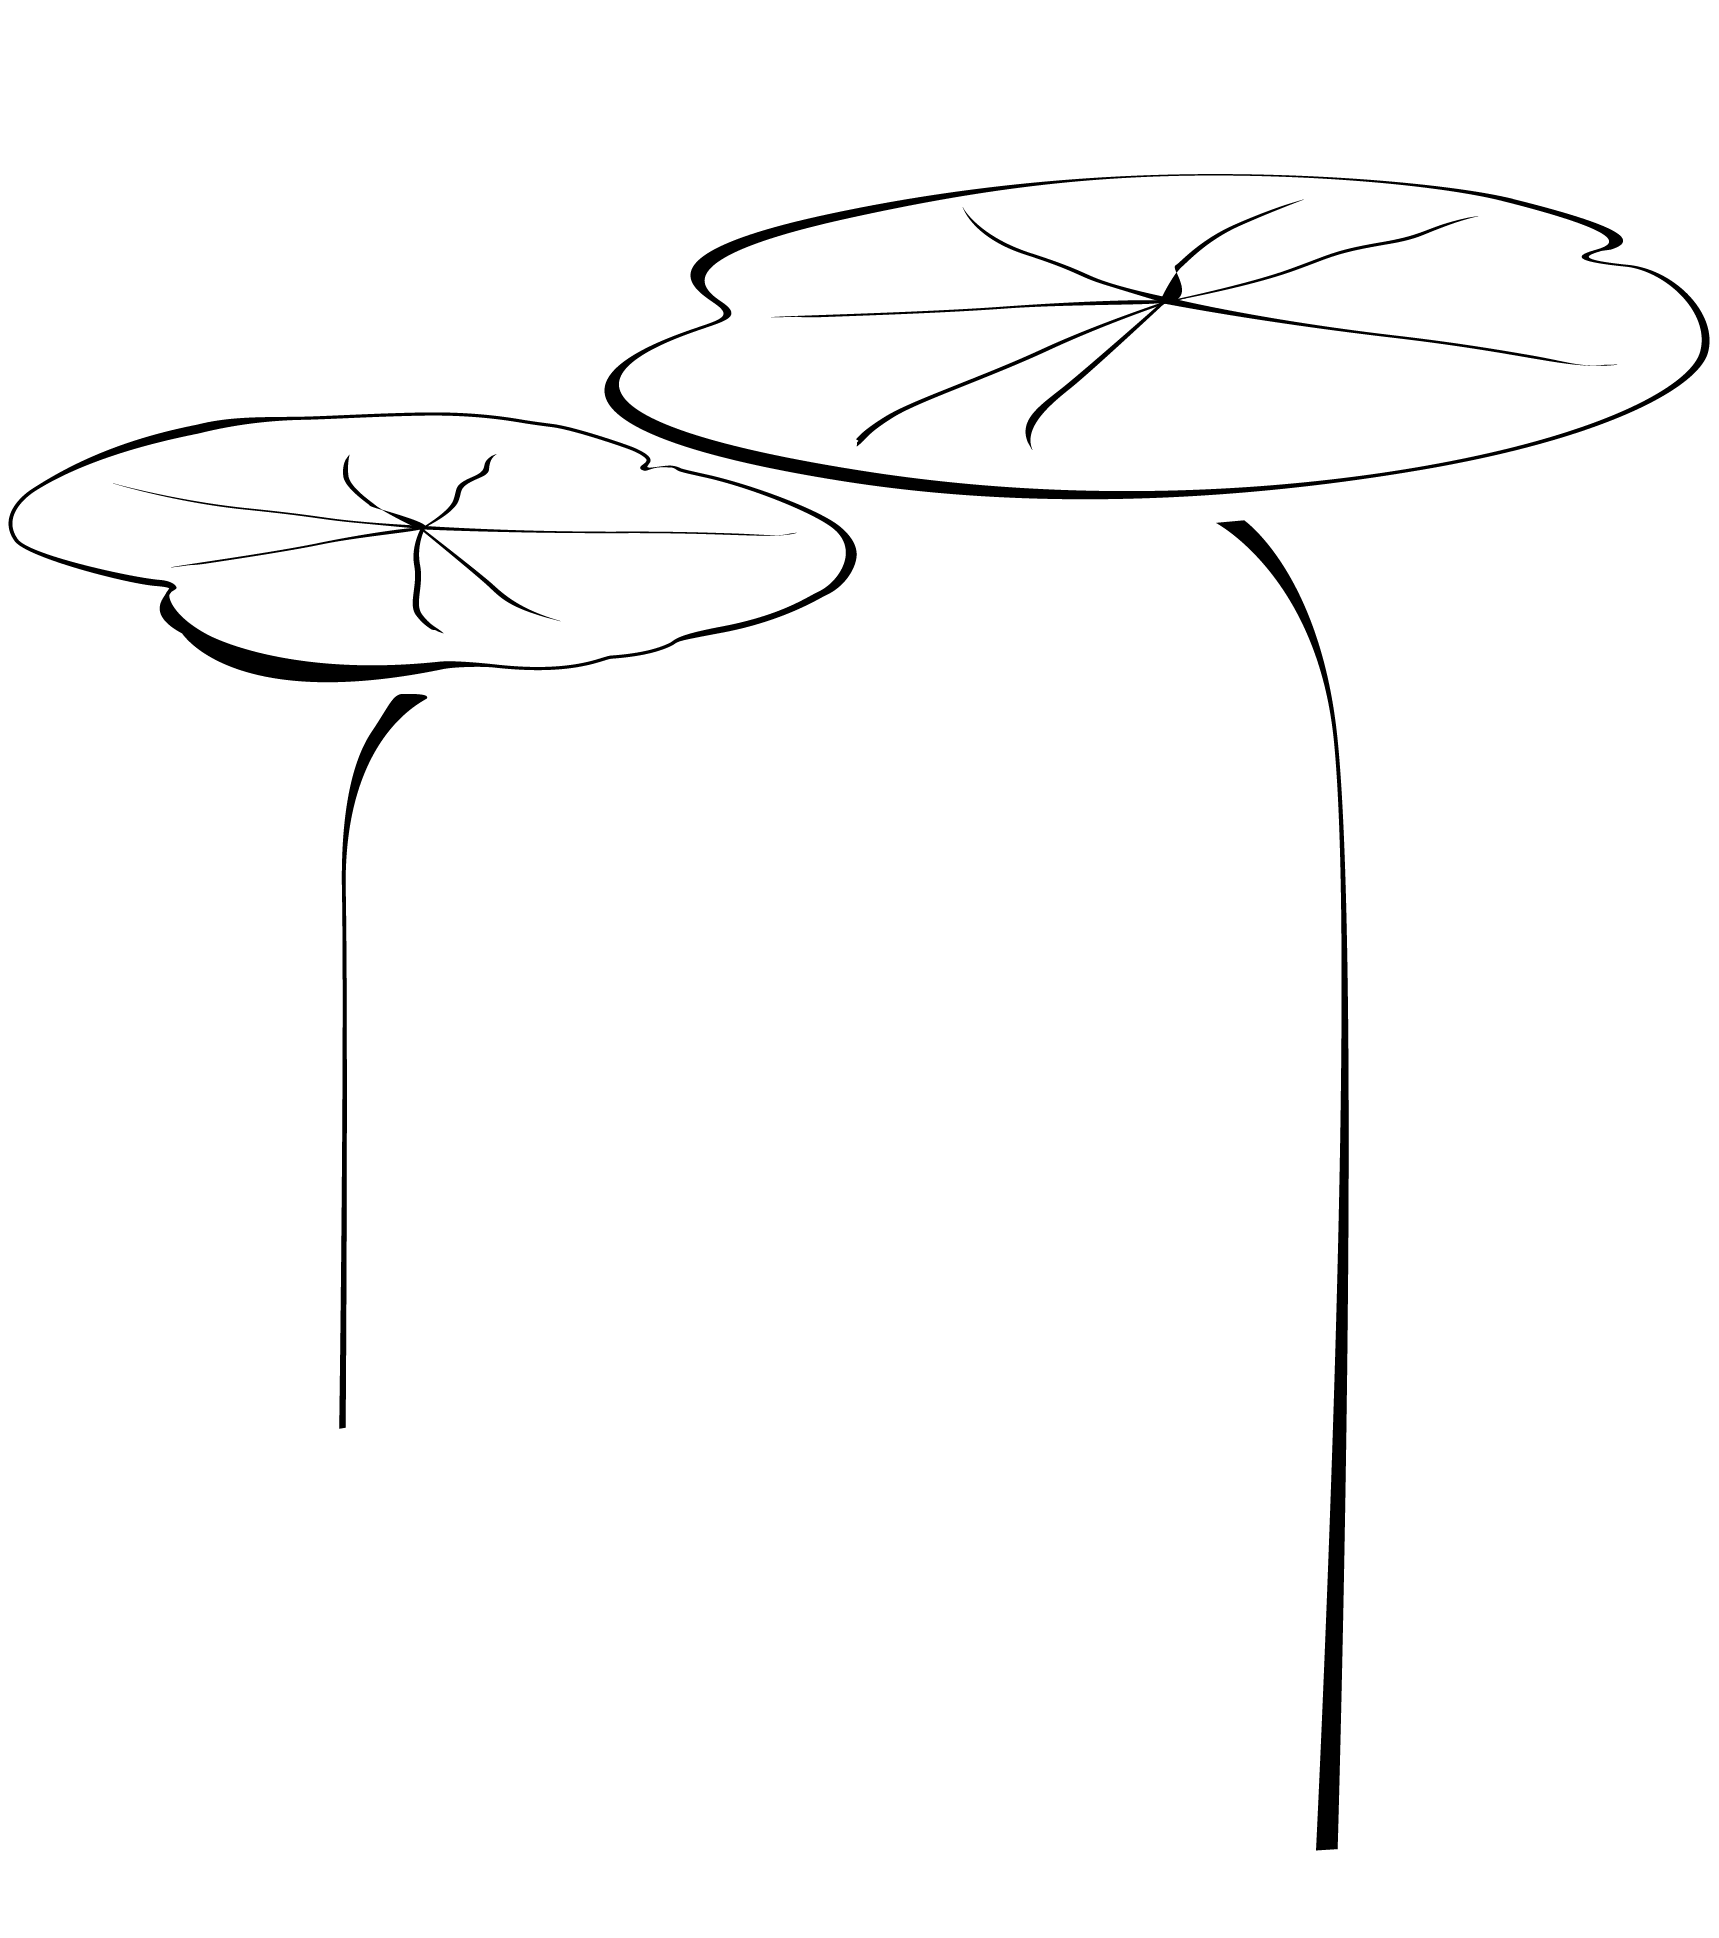 Eine Illustration, die 2 schwimmende Seerosenblätter darstellt im Stil von Sumi-e umgesetzt